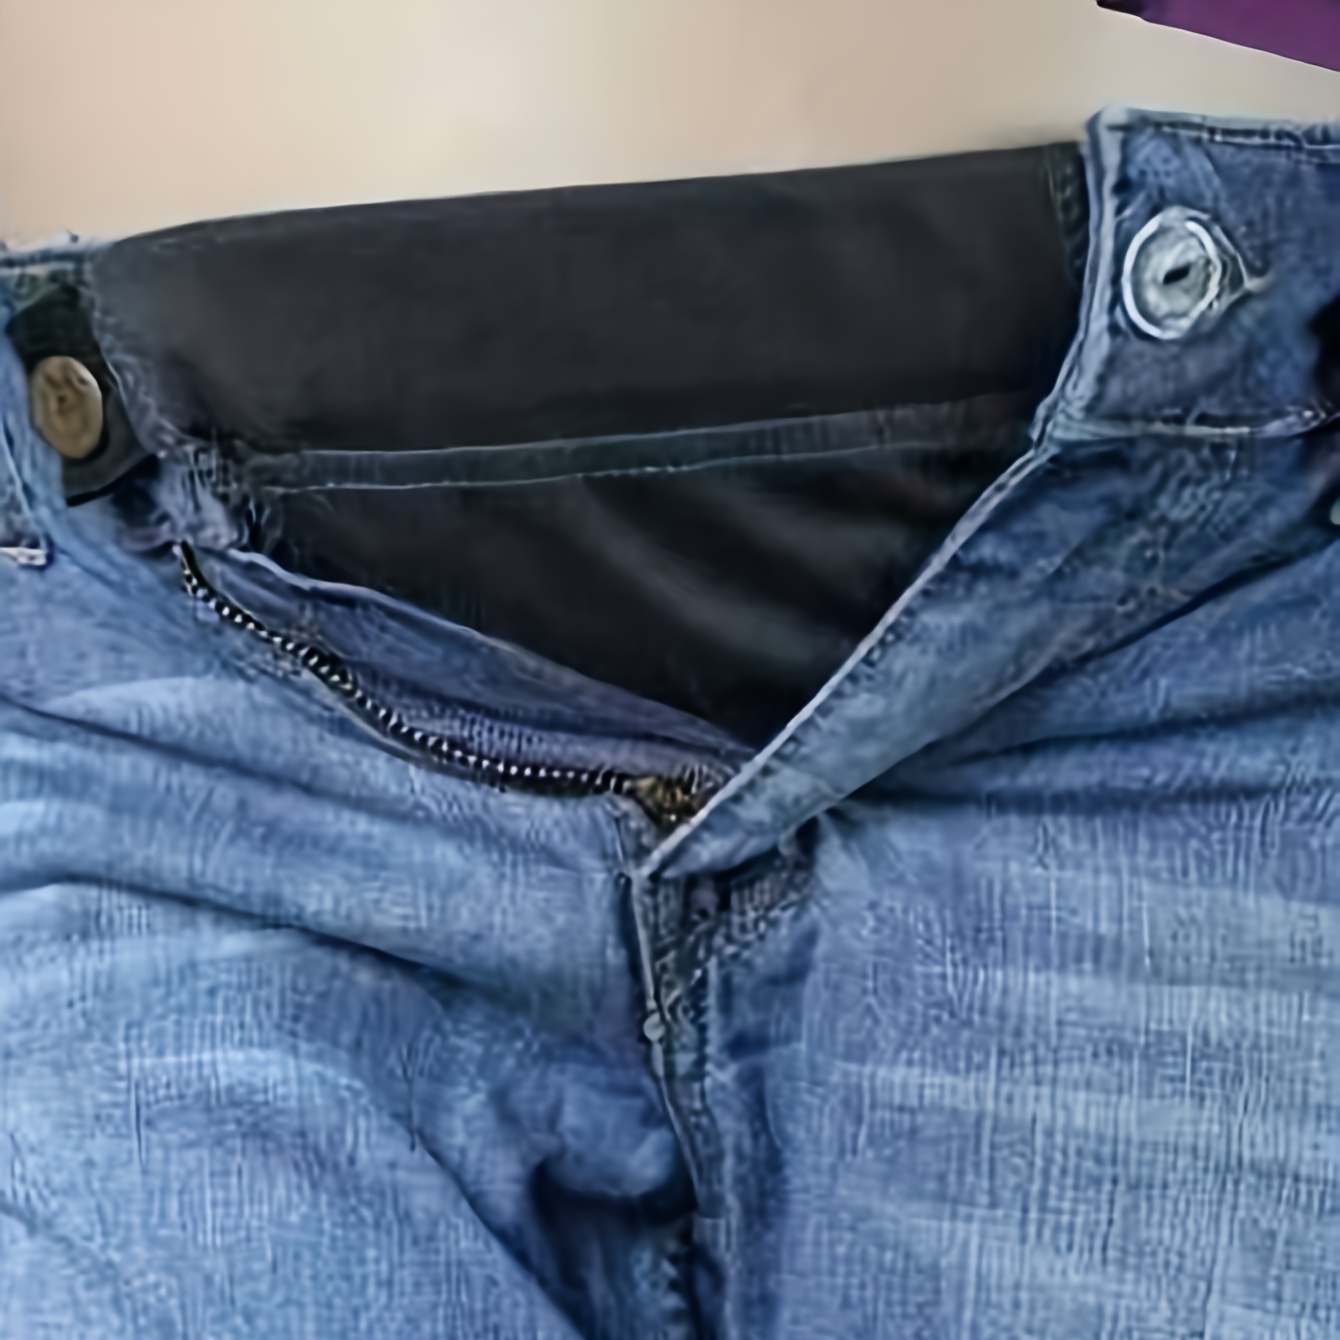 3Pcs Elastic Pants Waist Extenders, Adjustable Waistband Expanders for Men  and Women, Jeans Pants Button Extender Set (Black)